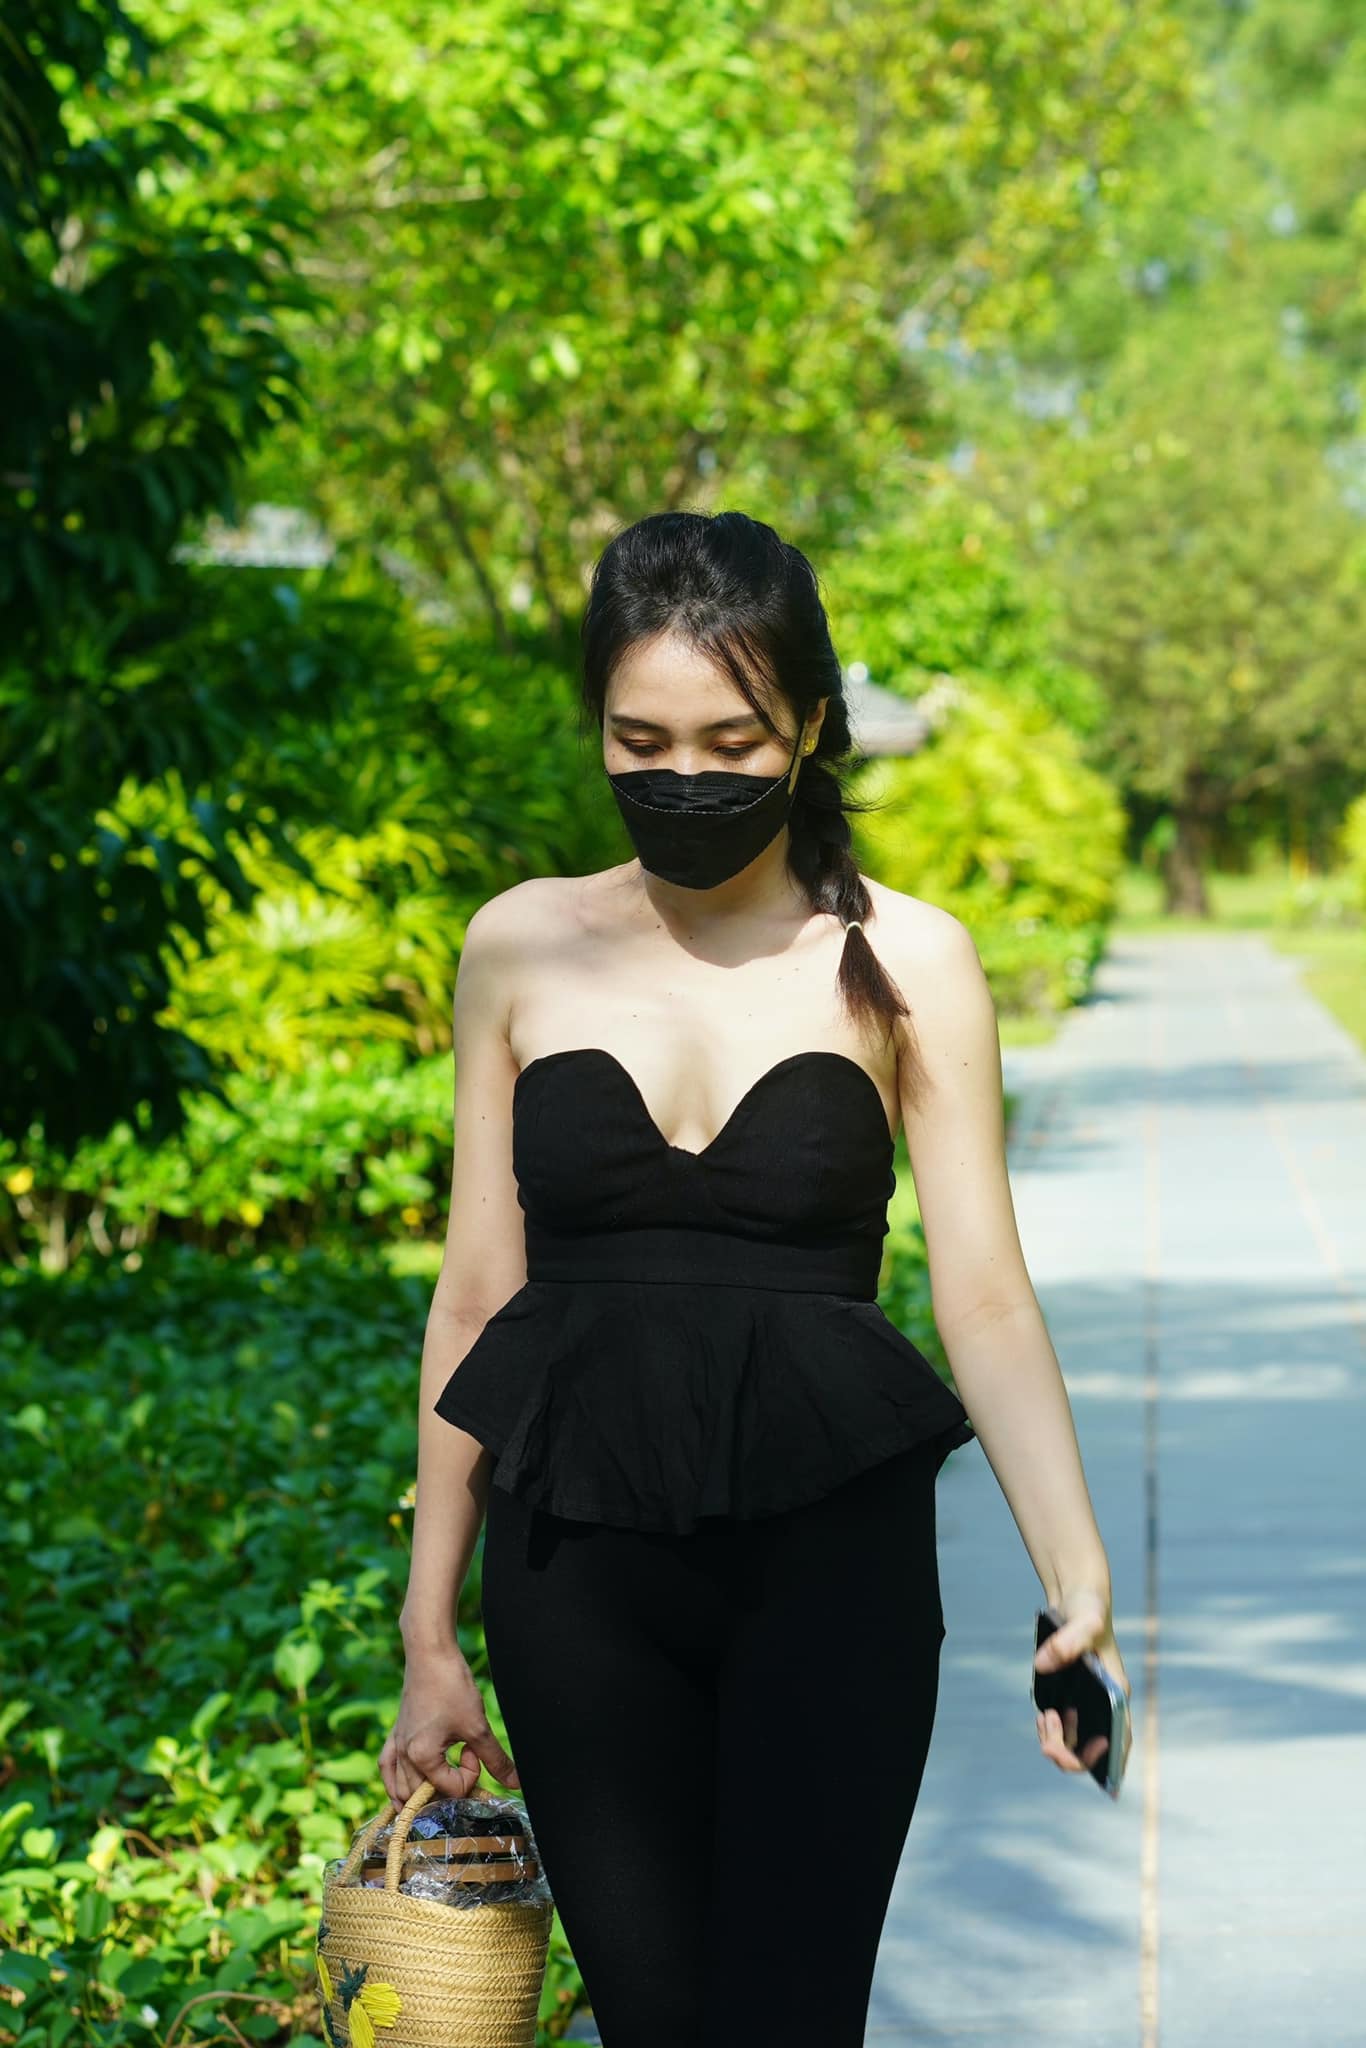 Lấy chồng hơn 25 tuổi, mỹ nhân nổi nhất Hoa hậu Việt Nam 2012 quanh quẩn làm vườn vẫn mặc đẹp - 28